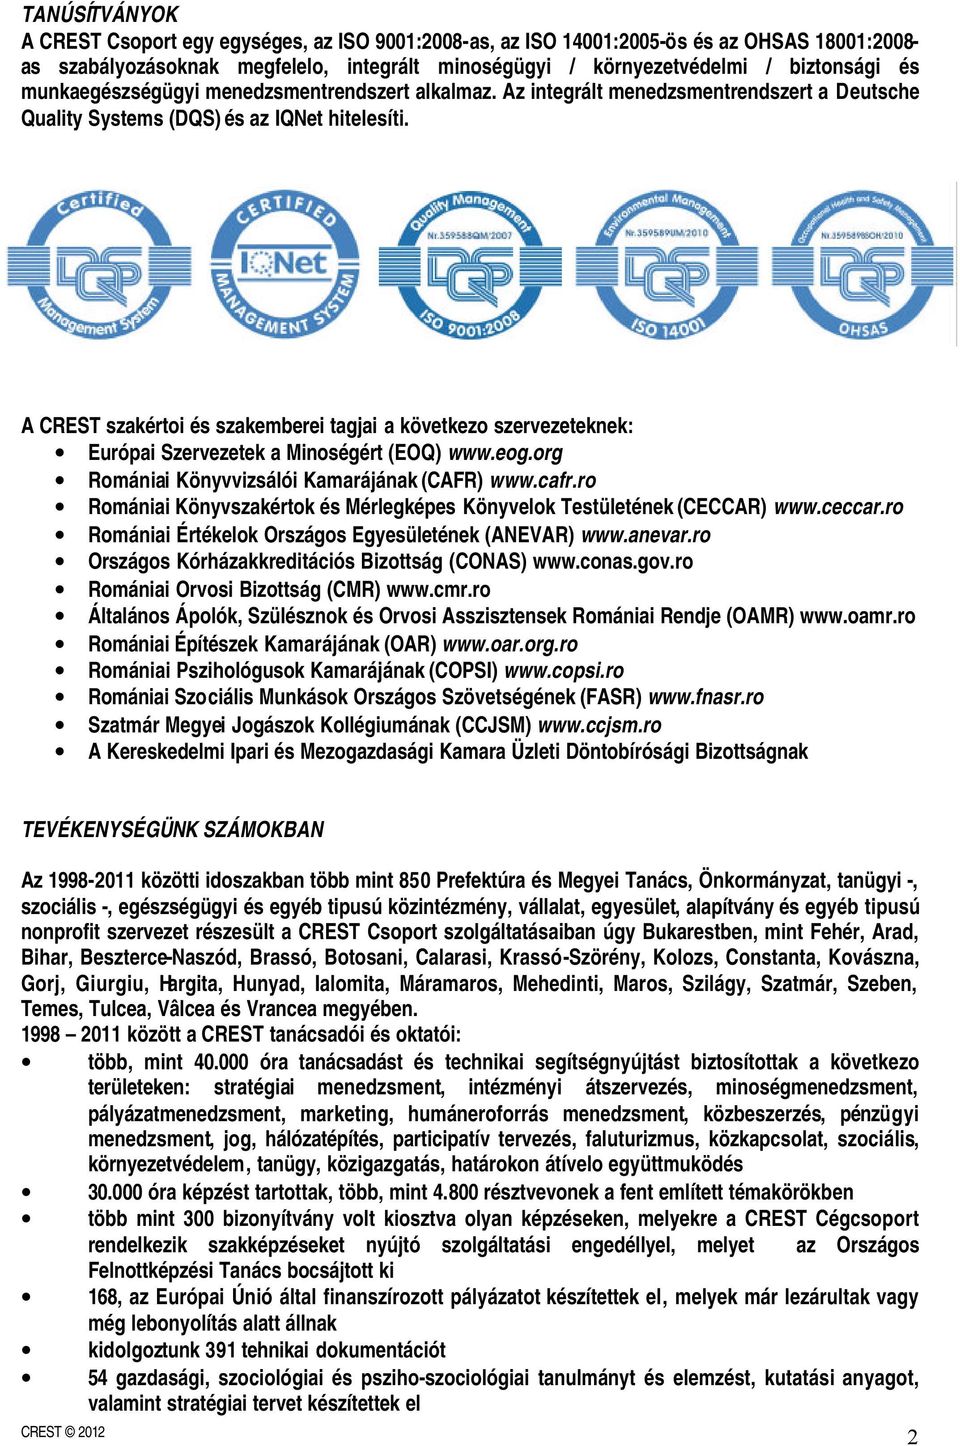 A CREST szakértoi és szakemberei tagjai a következo szervezeteknek: Európai Szervezetek a Minoségért (EOQ) www.eog.org Romániai Könyvvizsálói Kamarájának (CAFR) www.cafr.